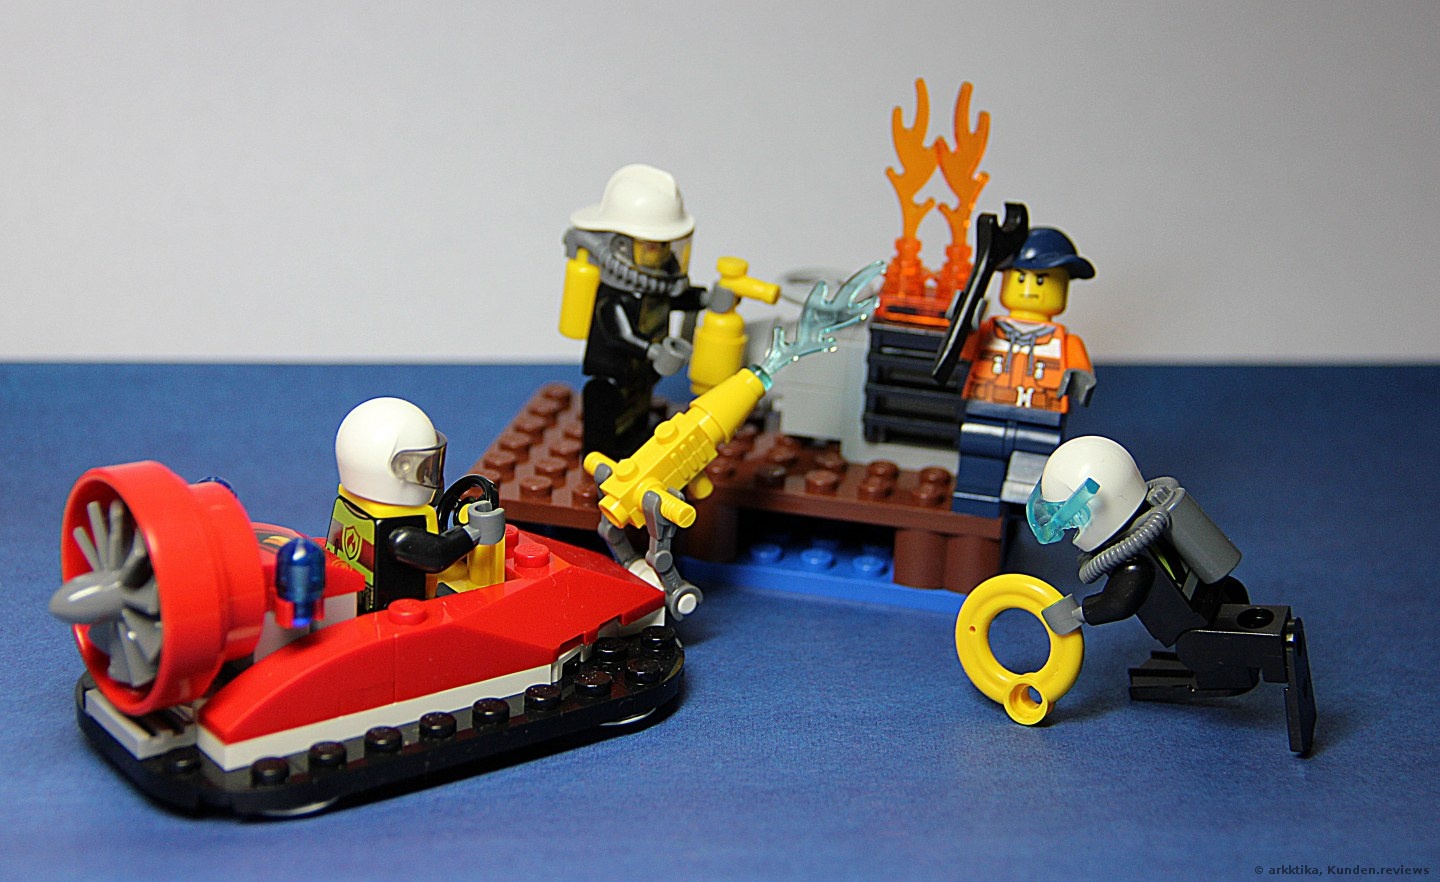 Lego City 60106 ist ein Feuerwehr-Starter-Set